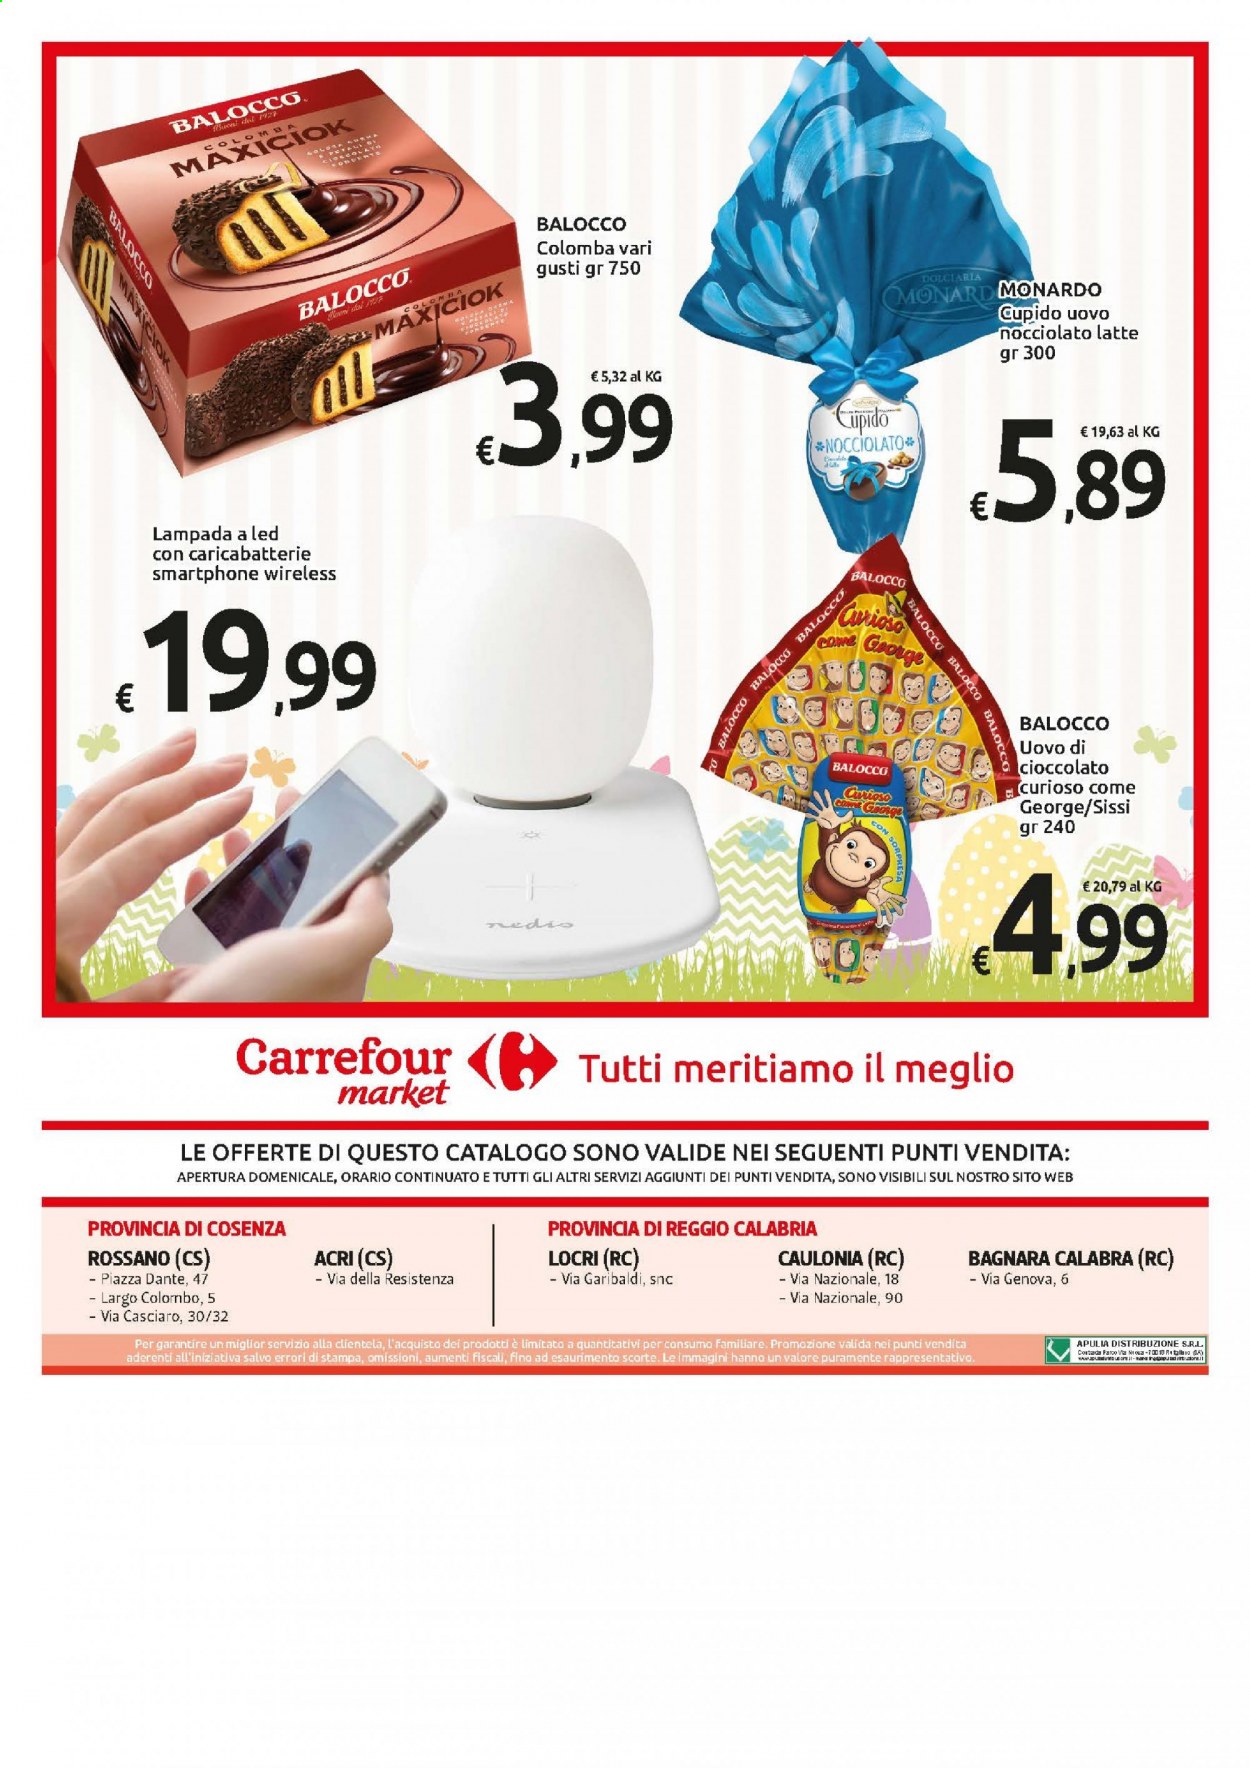 thumbnail - Volantino Carrefour - 16/3/2021 - 28/3/2021 - Prodotti in offerta - colomba, Balocco, latte, uovo di Pasqua, smartphone, caricabatterie, lampada. Pagina 24.